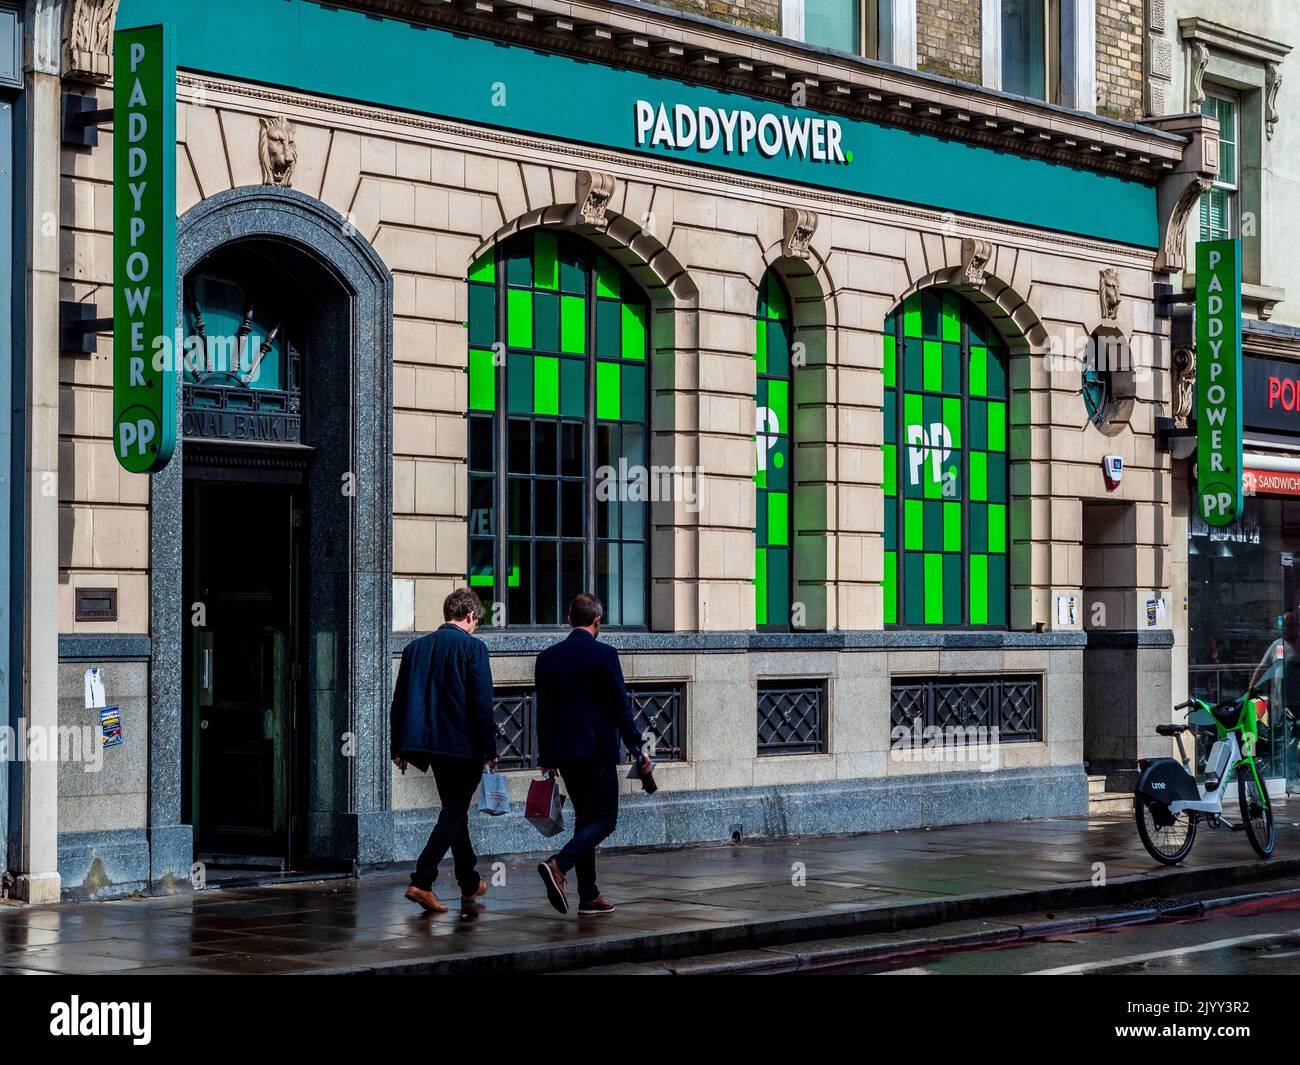 Paddy Power Bookies Shop au 286-288 Pentonville Rd, Kings Cross Londres. Paddy Power est un bookmaker irlandais fondé en 1988. Banque D'Images